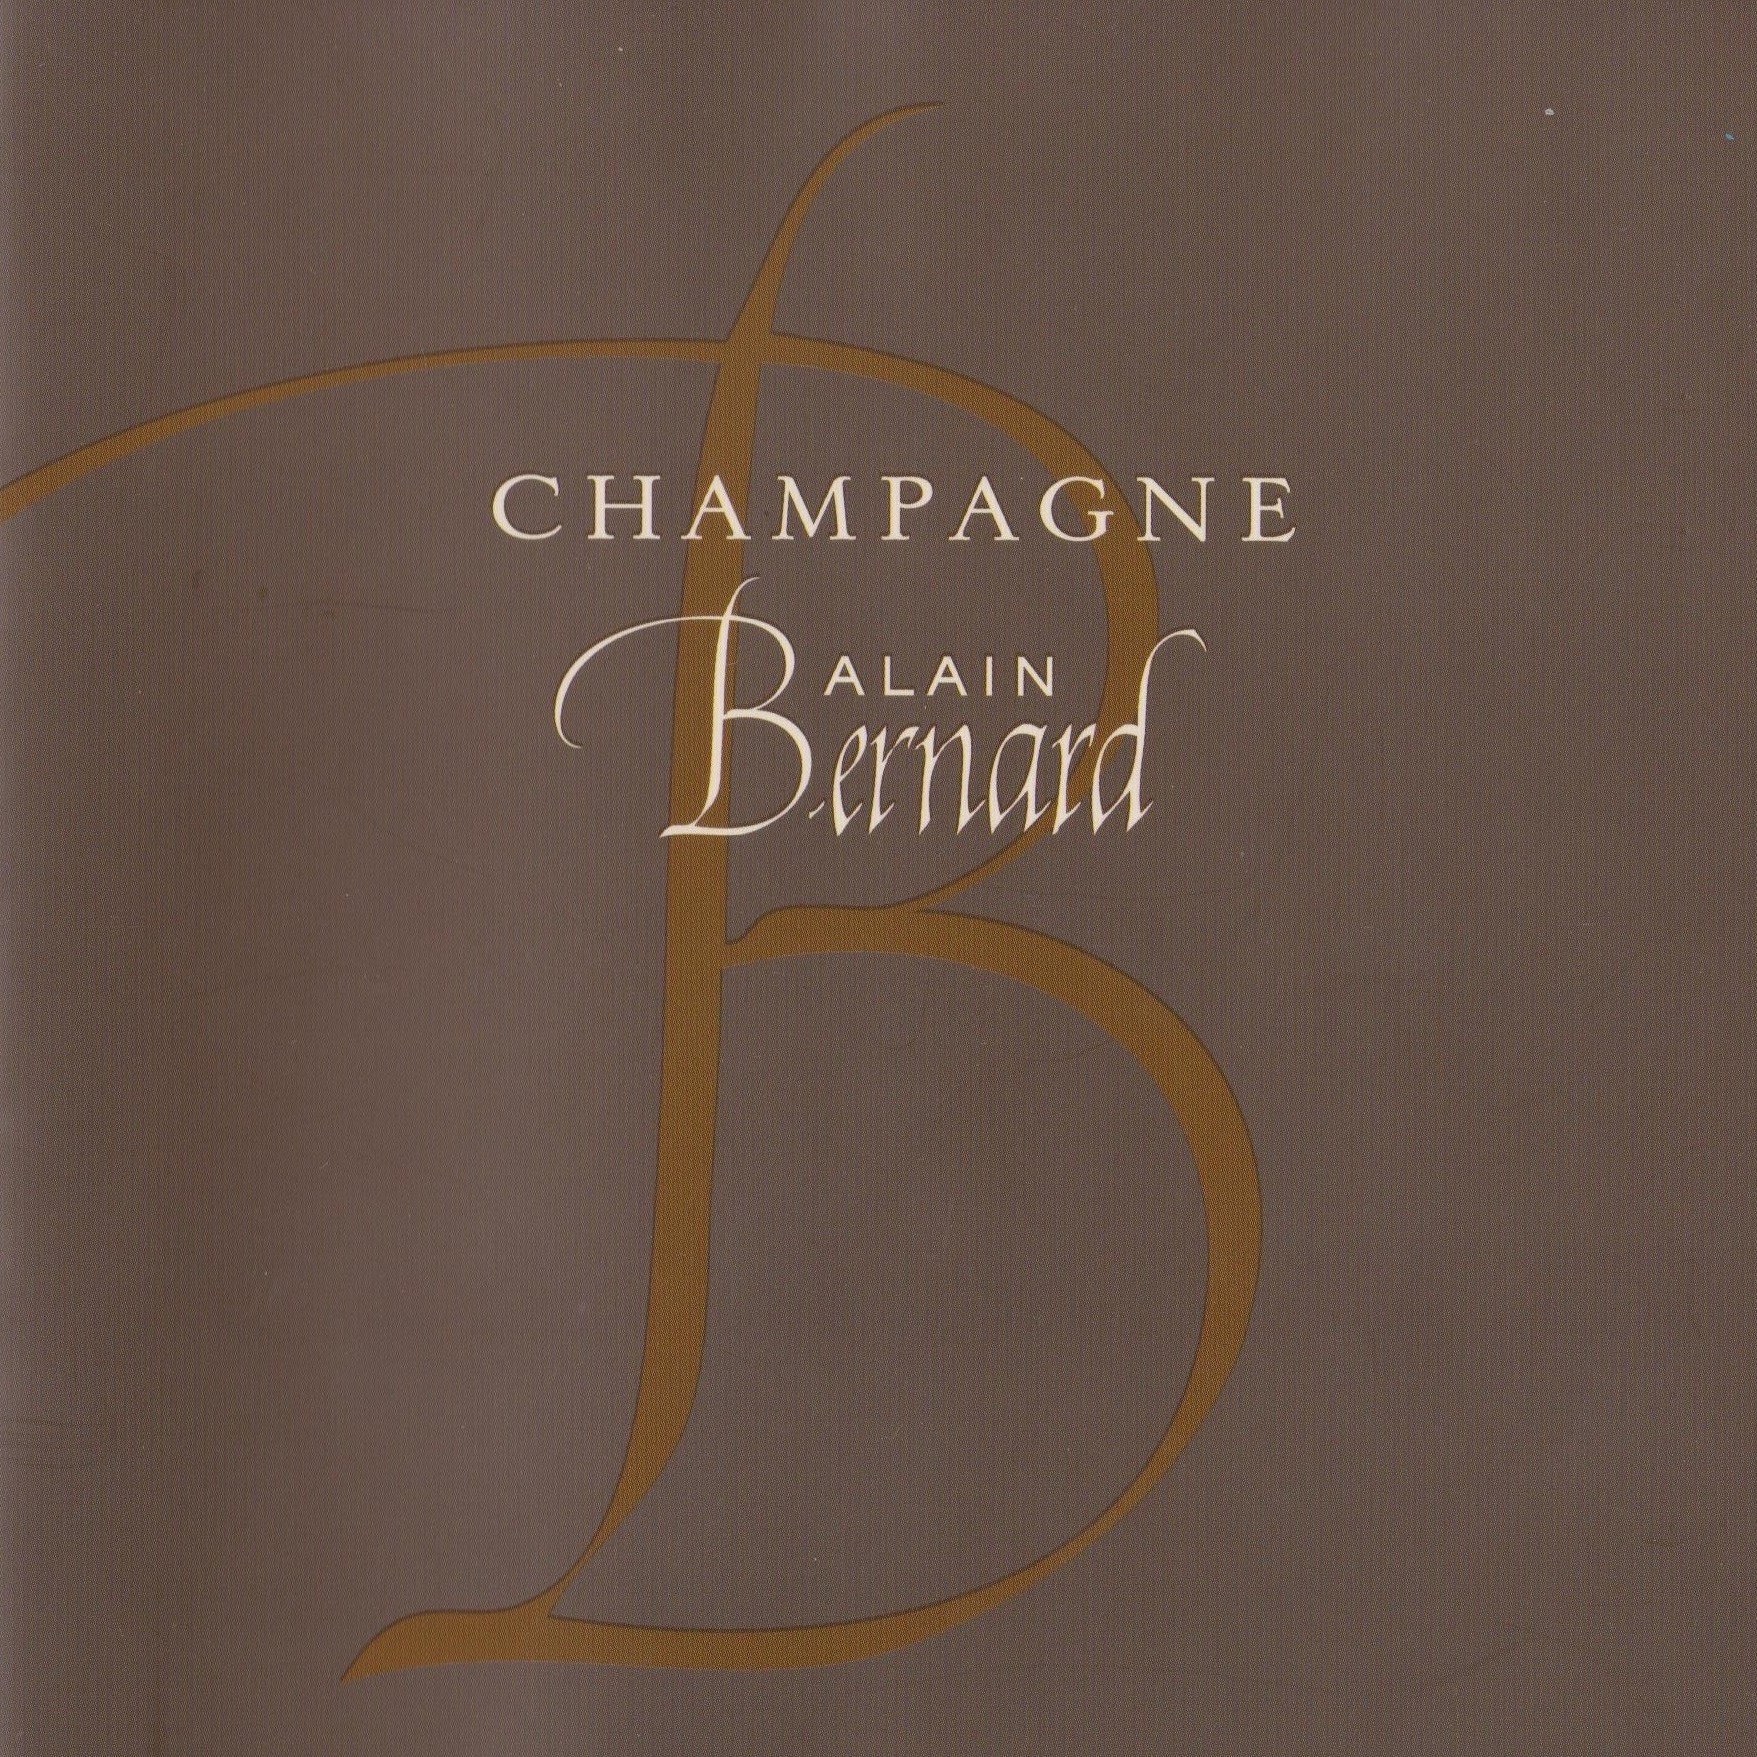 Champagne Alain Bernard